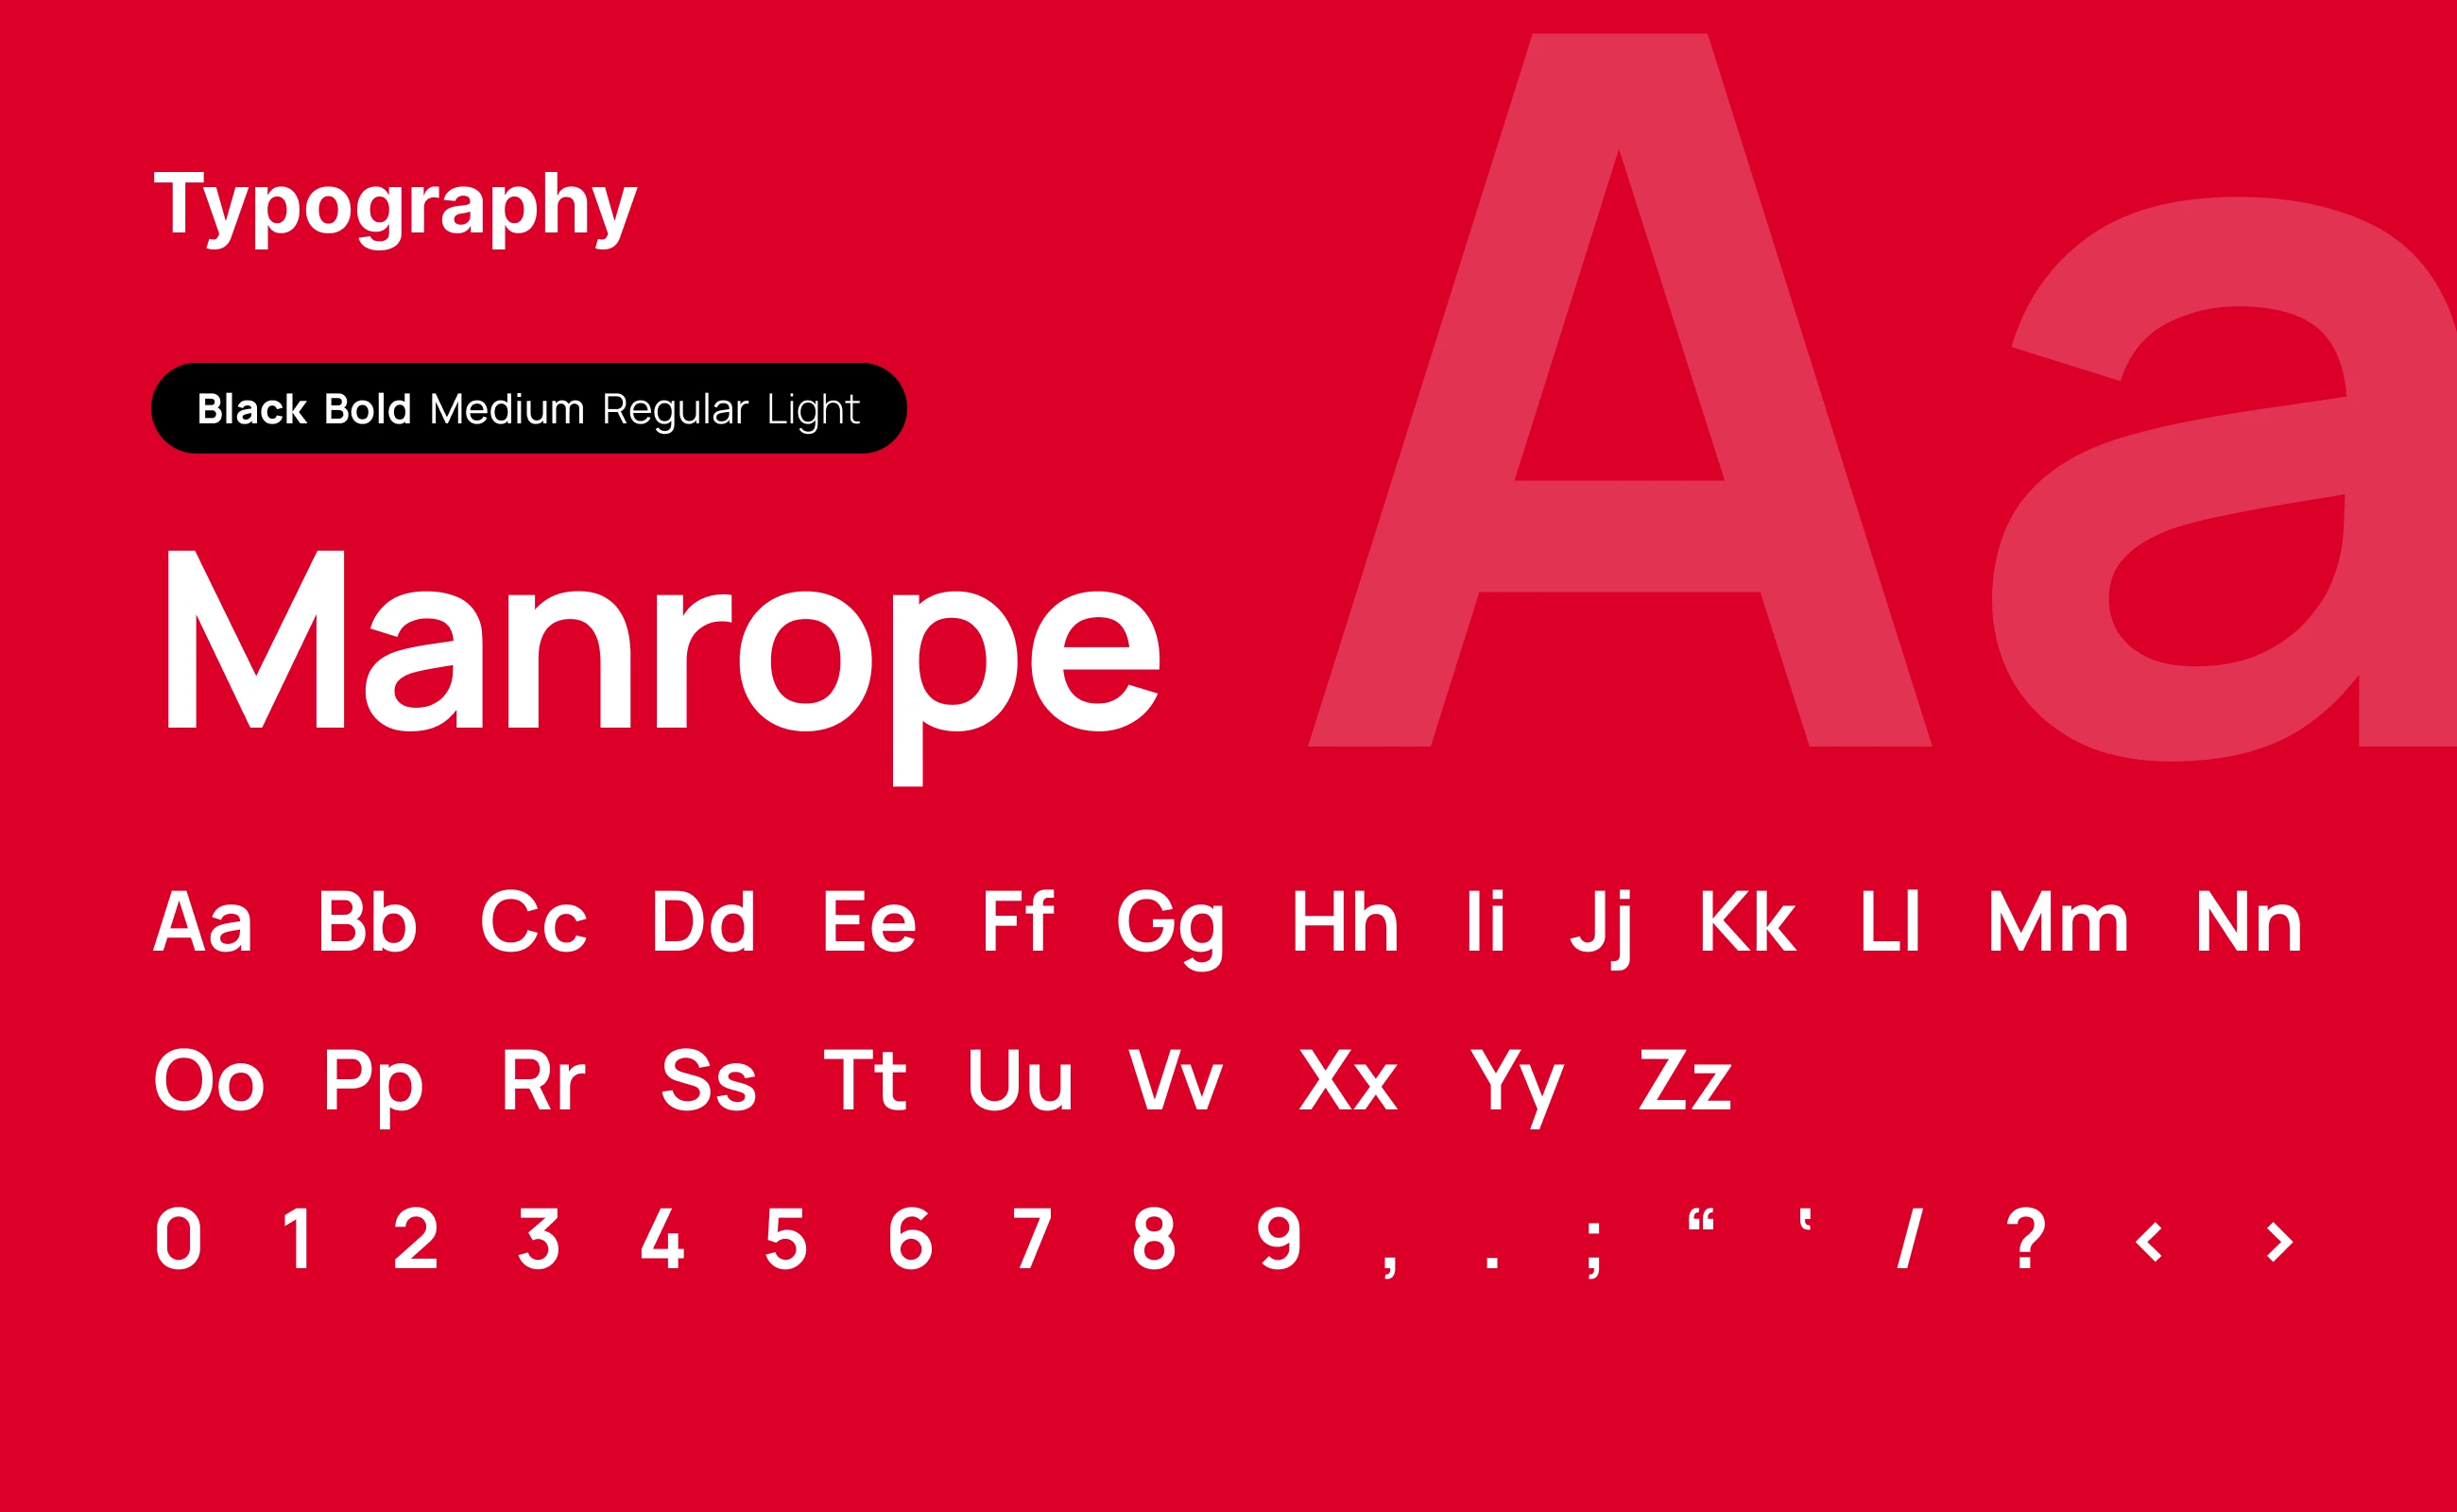 Kinetika typography